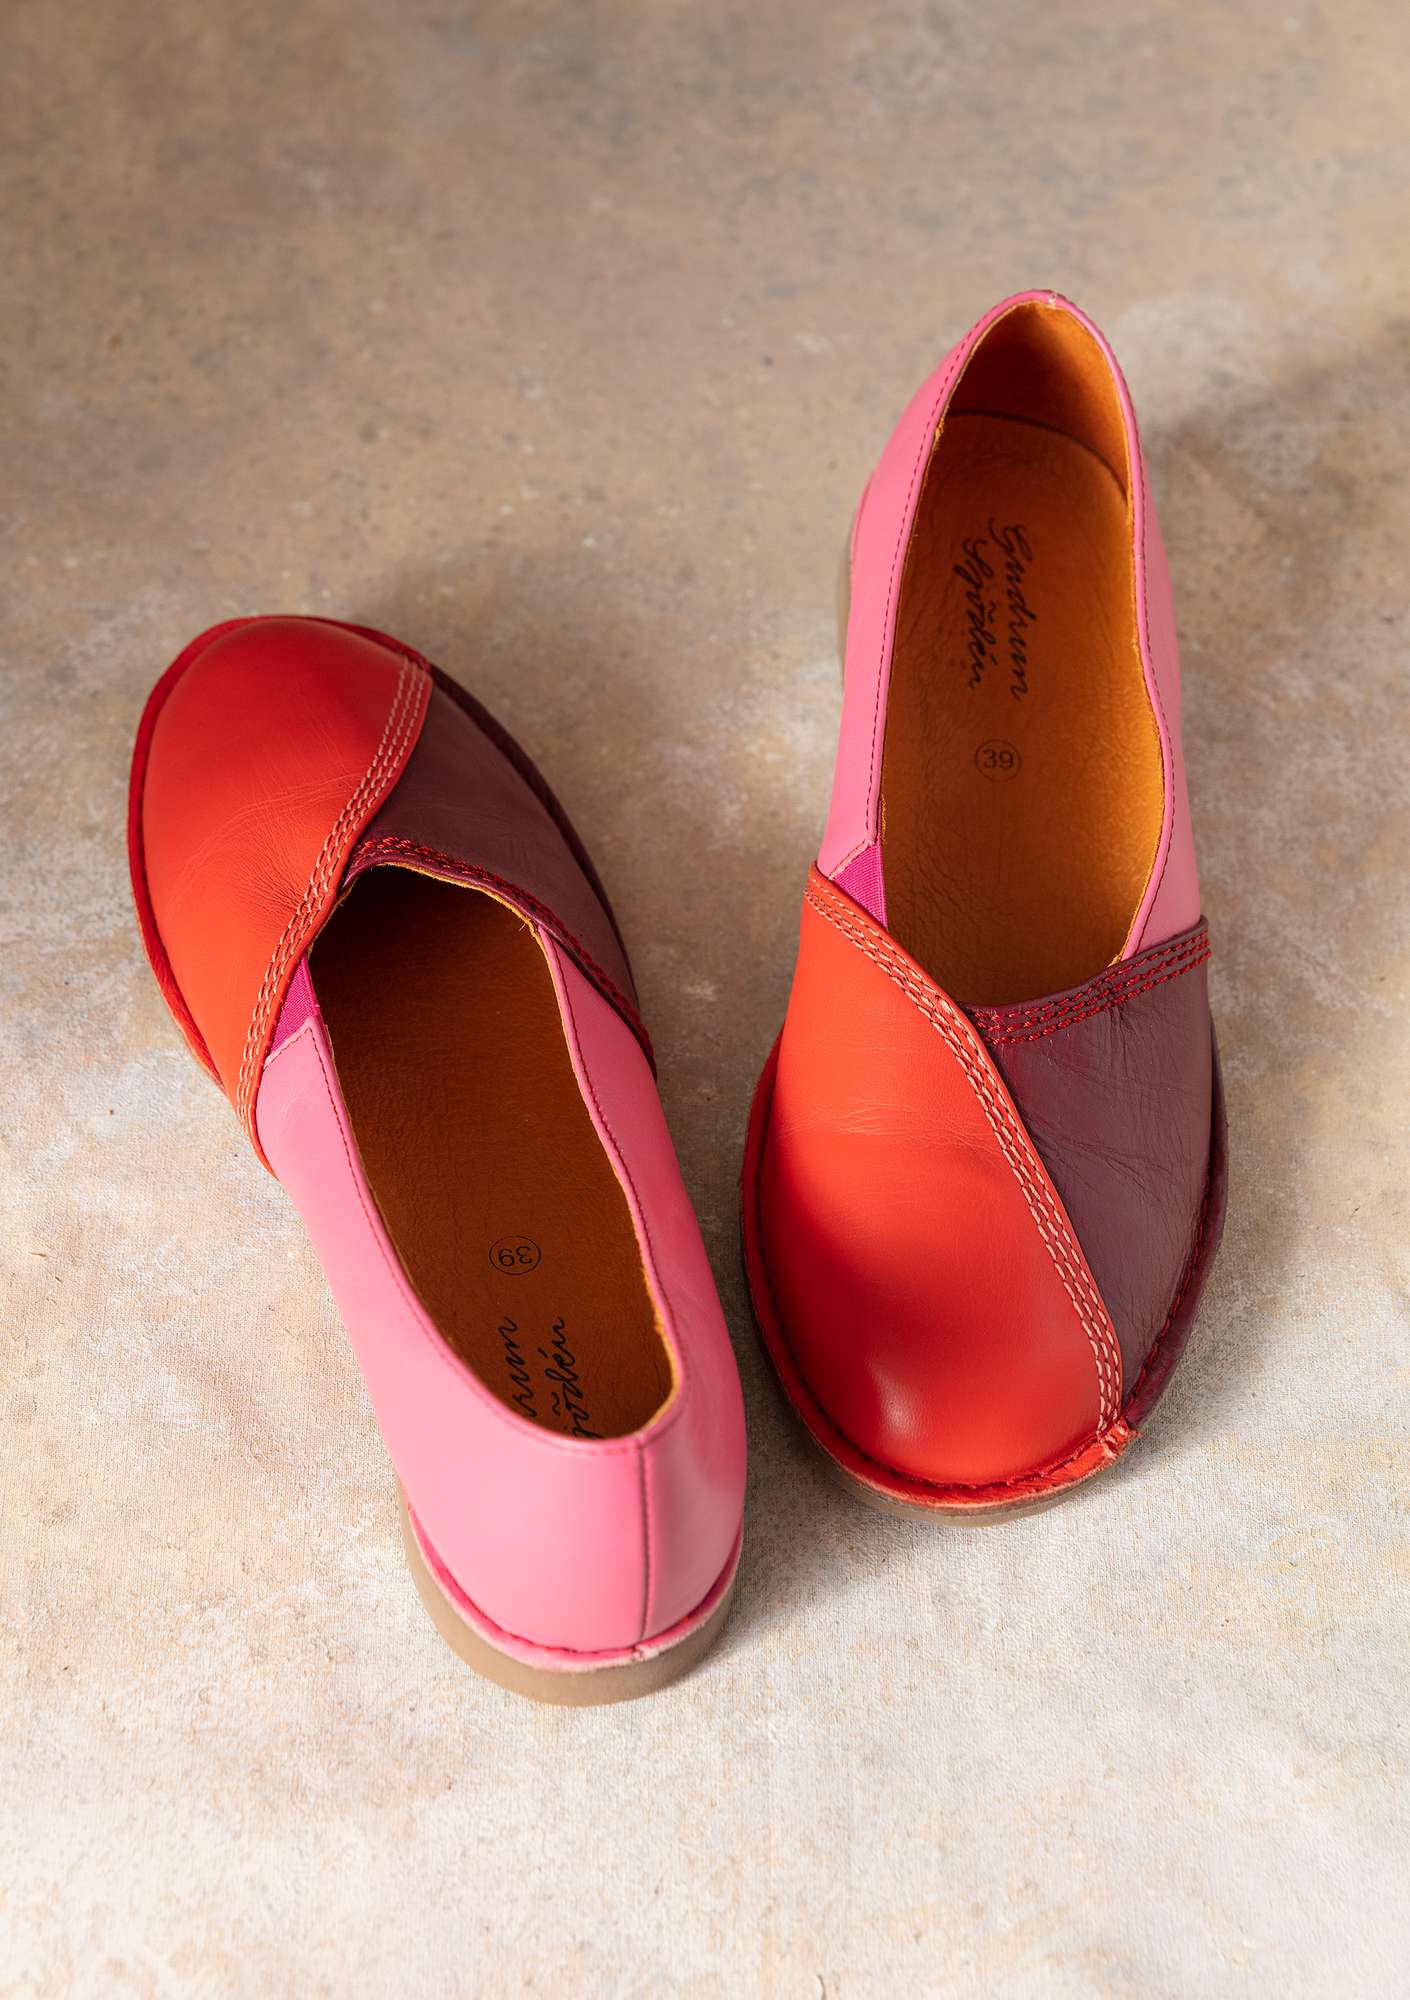 Nappa shoes bright red thumbnail